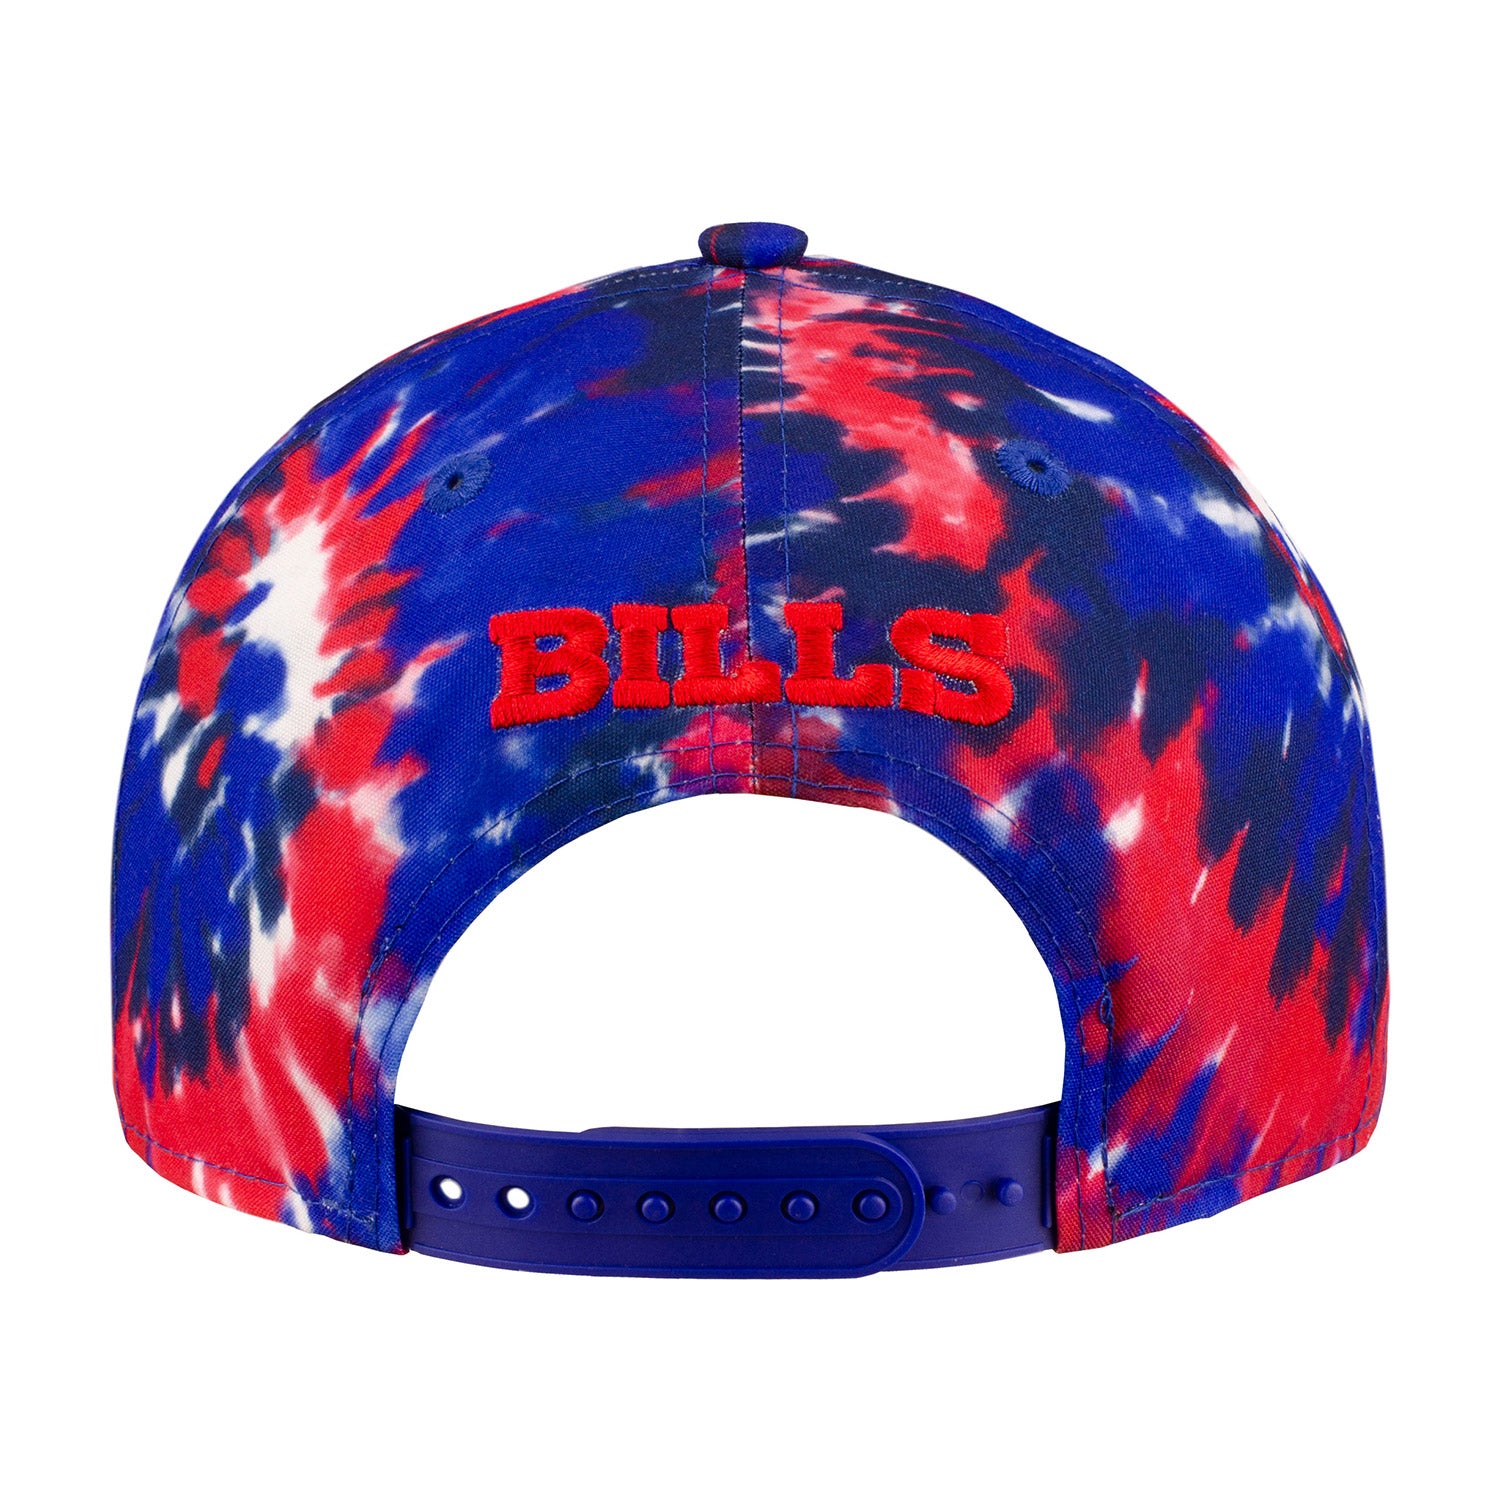 Buffalo Bills 2022 NFL SIDELINE TIE-DYE SNAPBACK Hat